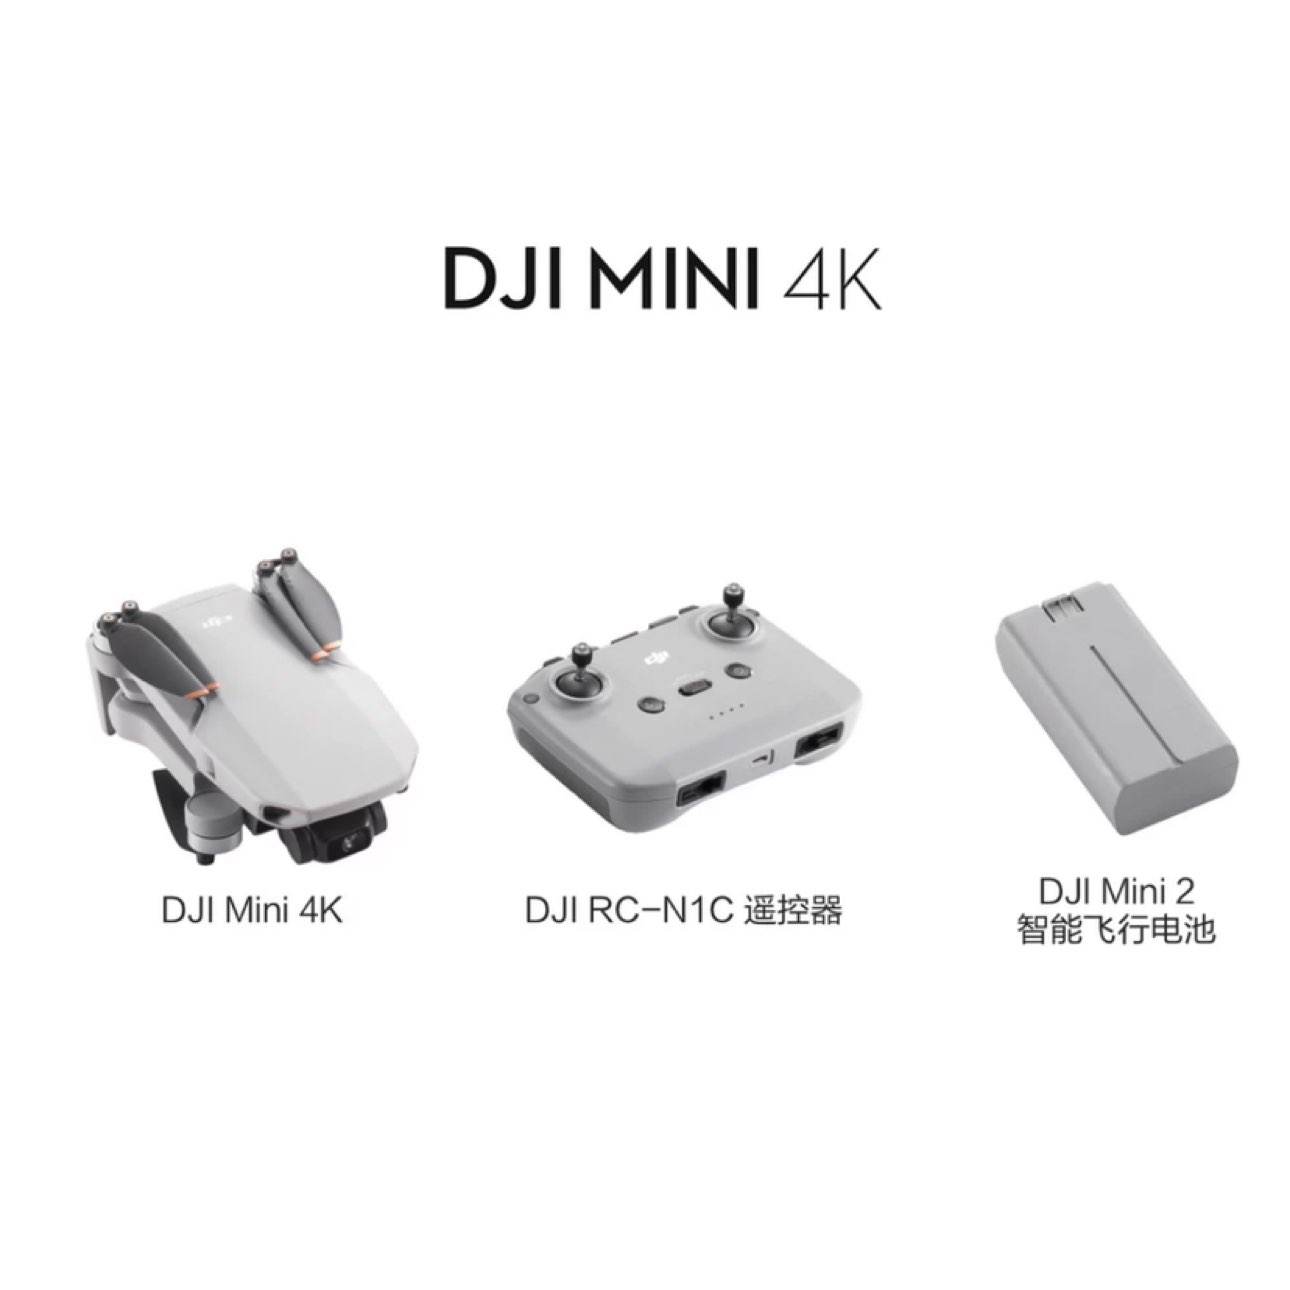 大疆 DJI Mini 4K 迷你航拍机 1499元